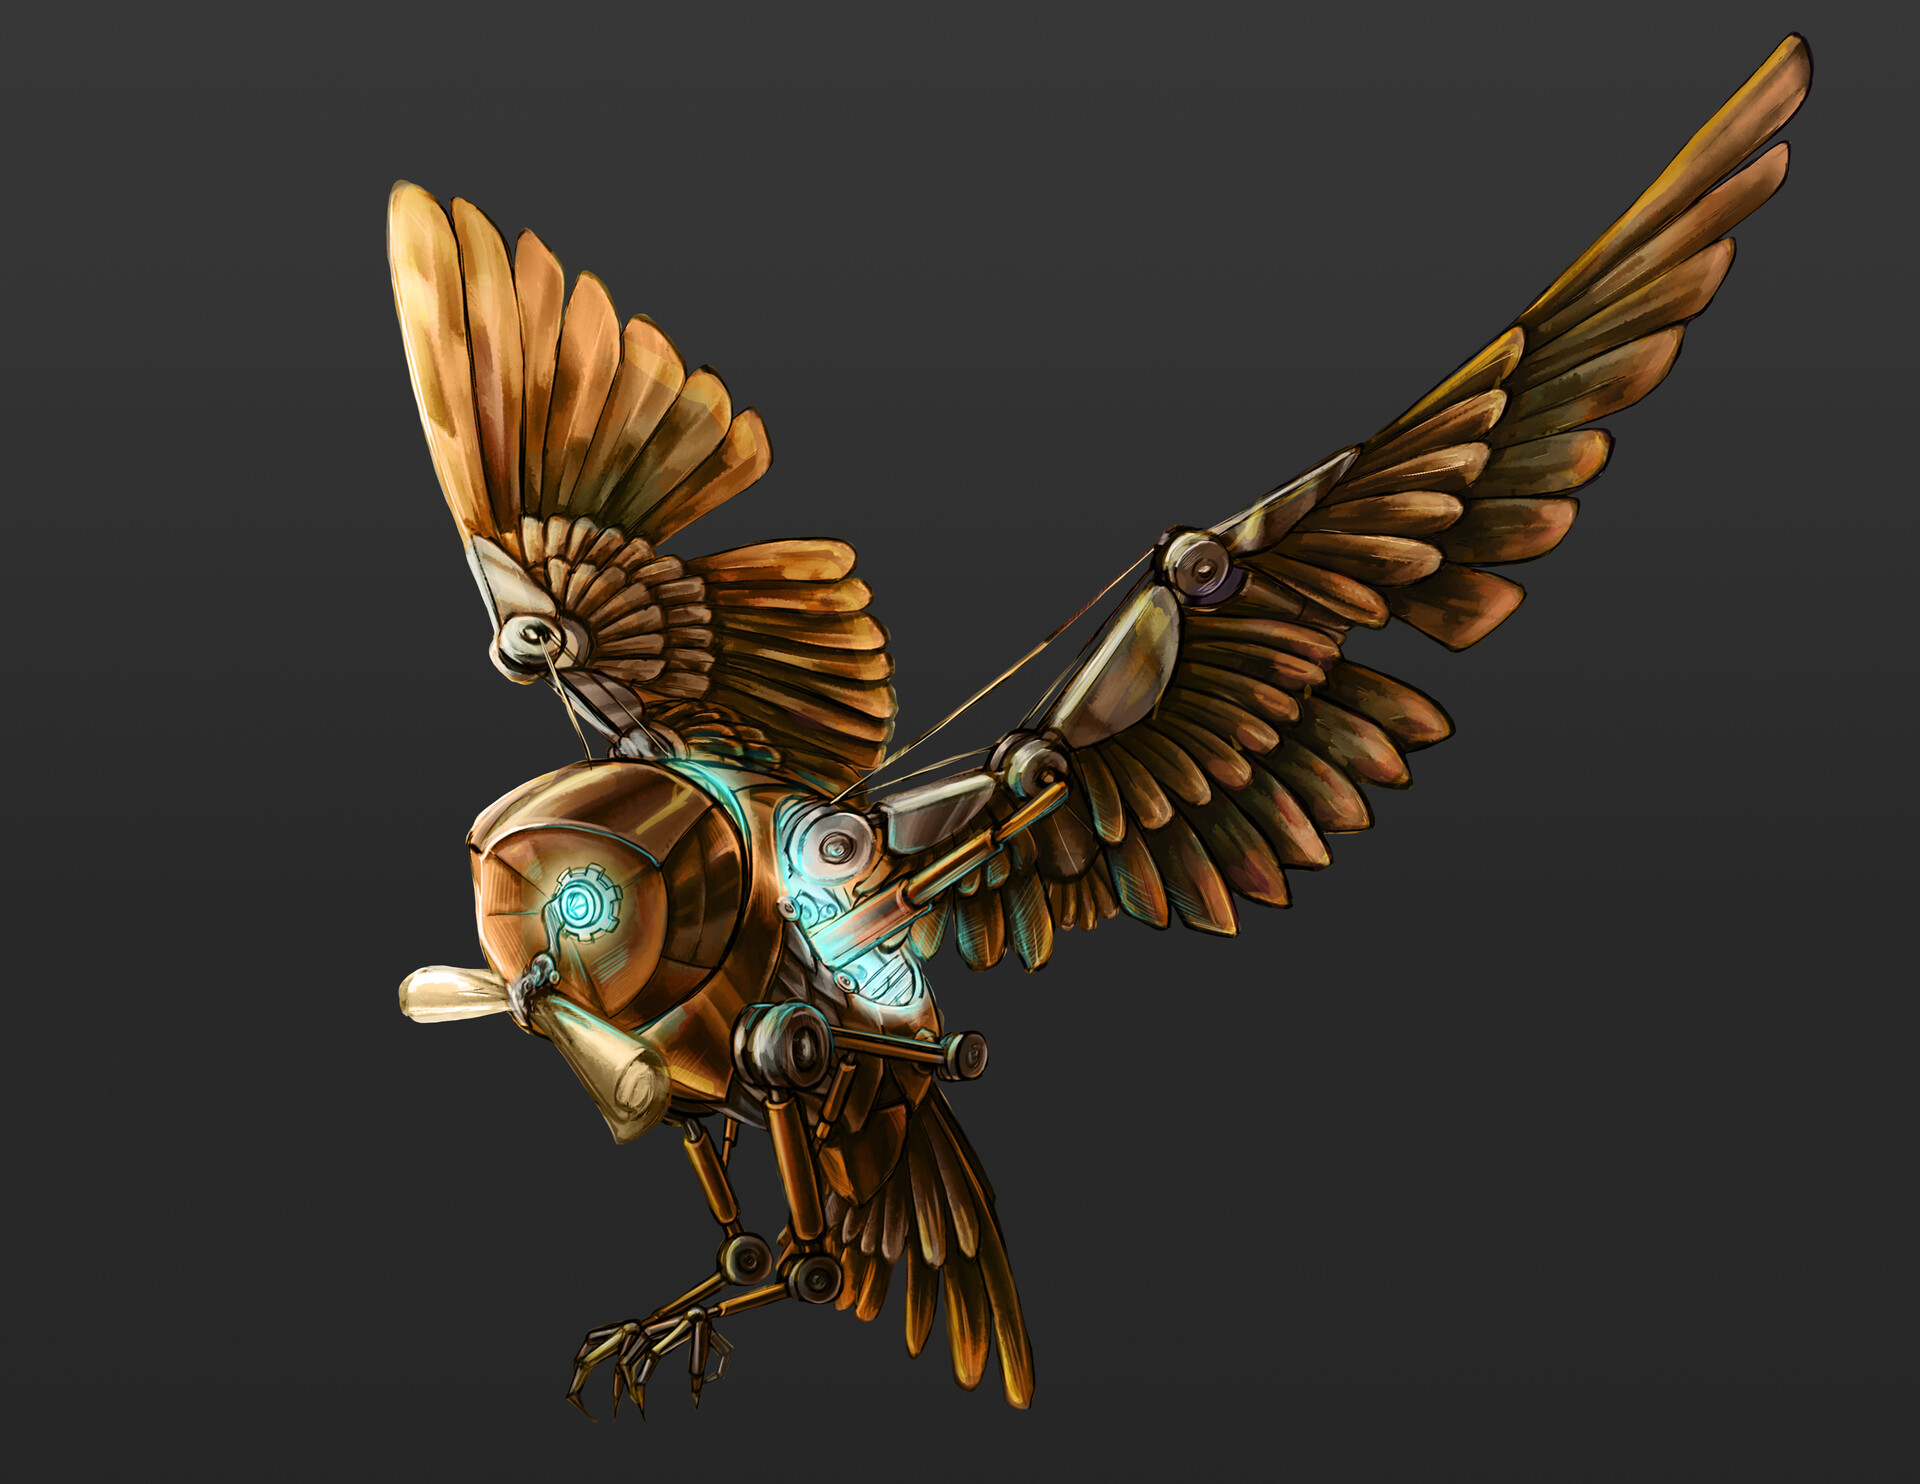 alisen-gant-mechnical-owl-render.jpg